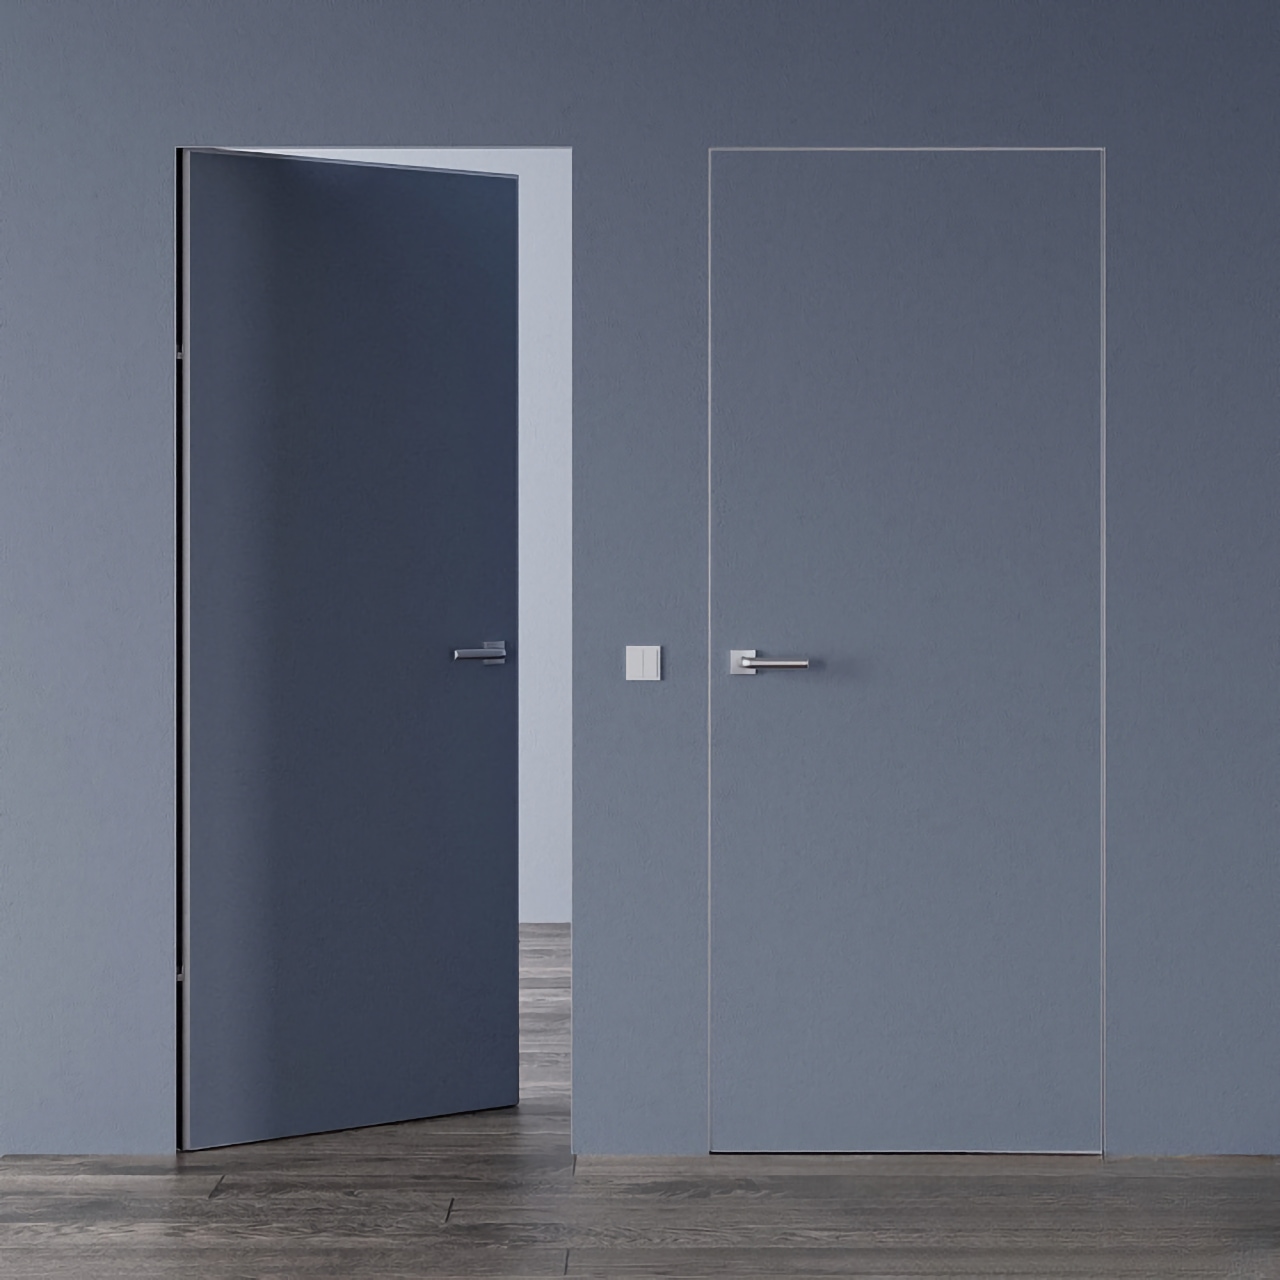 Межкомнатные двери скрытого монтажа под покраску • Smart Invisible с алюминиевым серым торцом внутреннее открывание